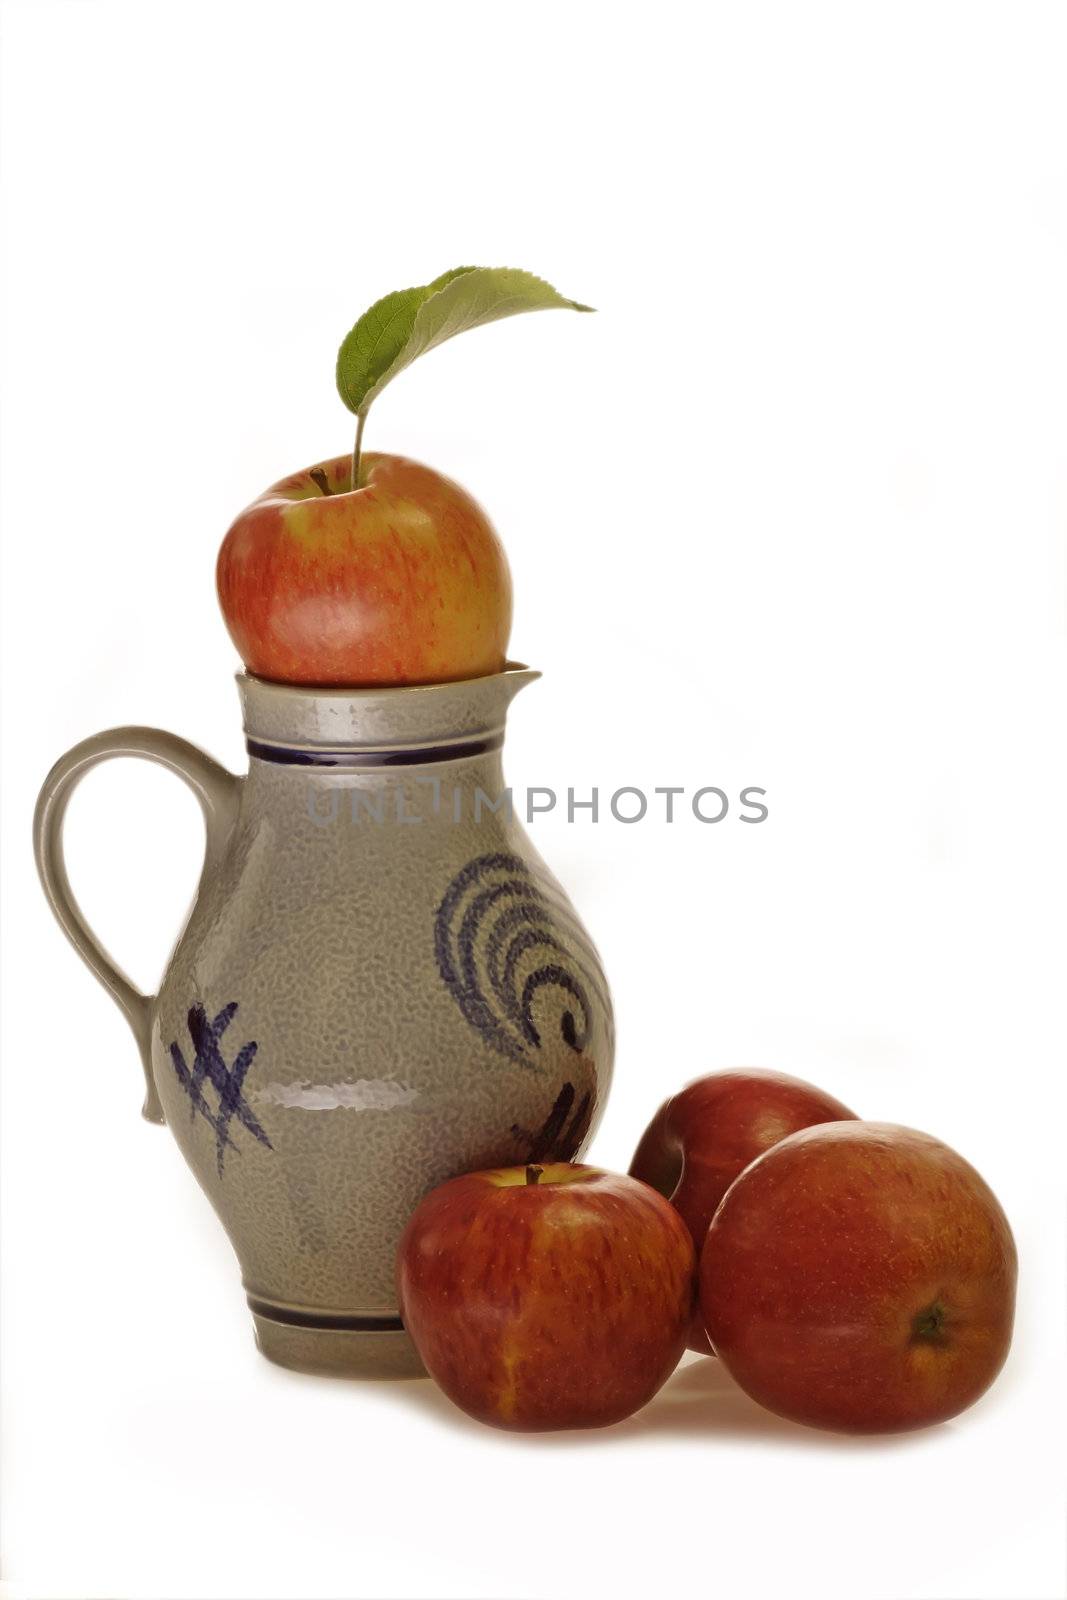 Apfelweinkrug mit frischen �pfeln auf hellem Hintergrund
Apple wine jug with fresh apples on bright background